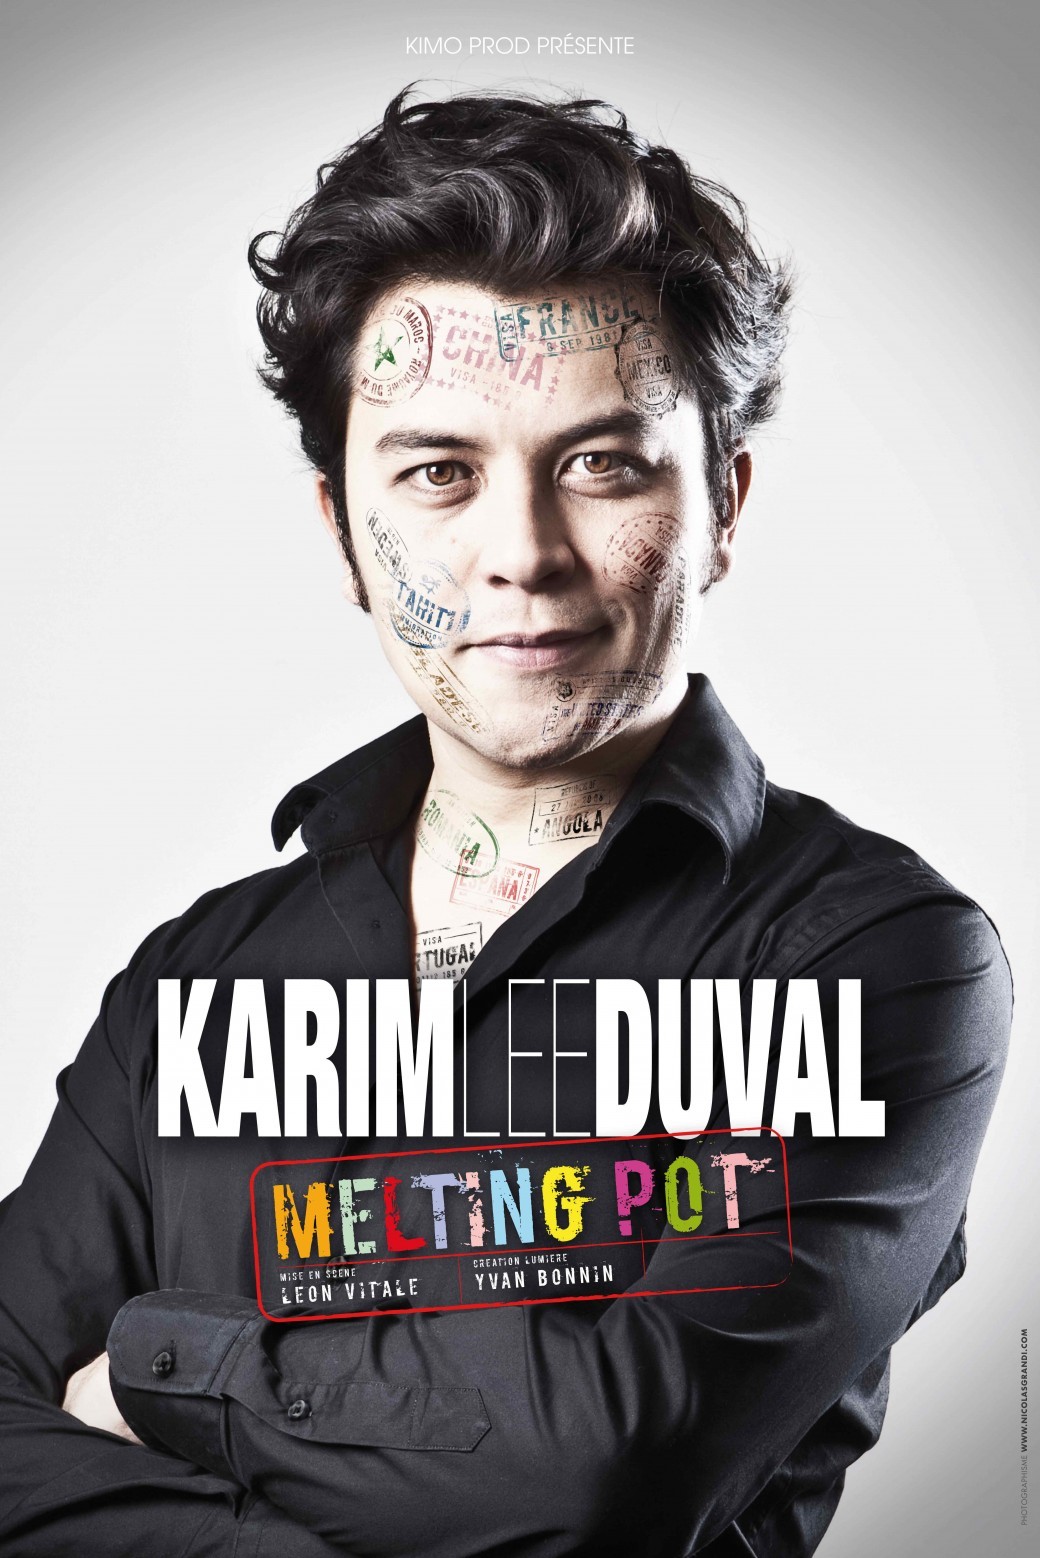 Karim Duval - Melting pot